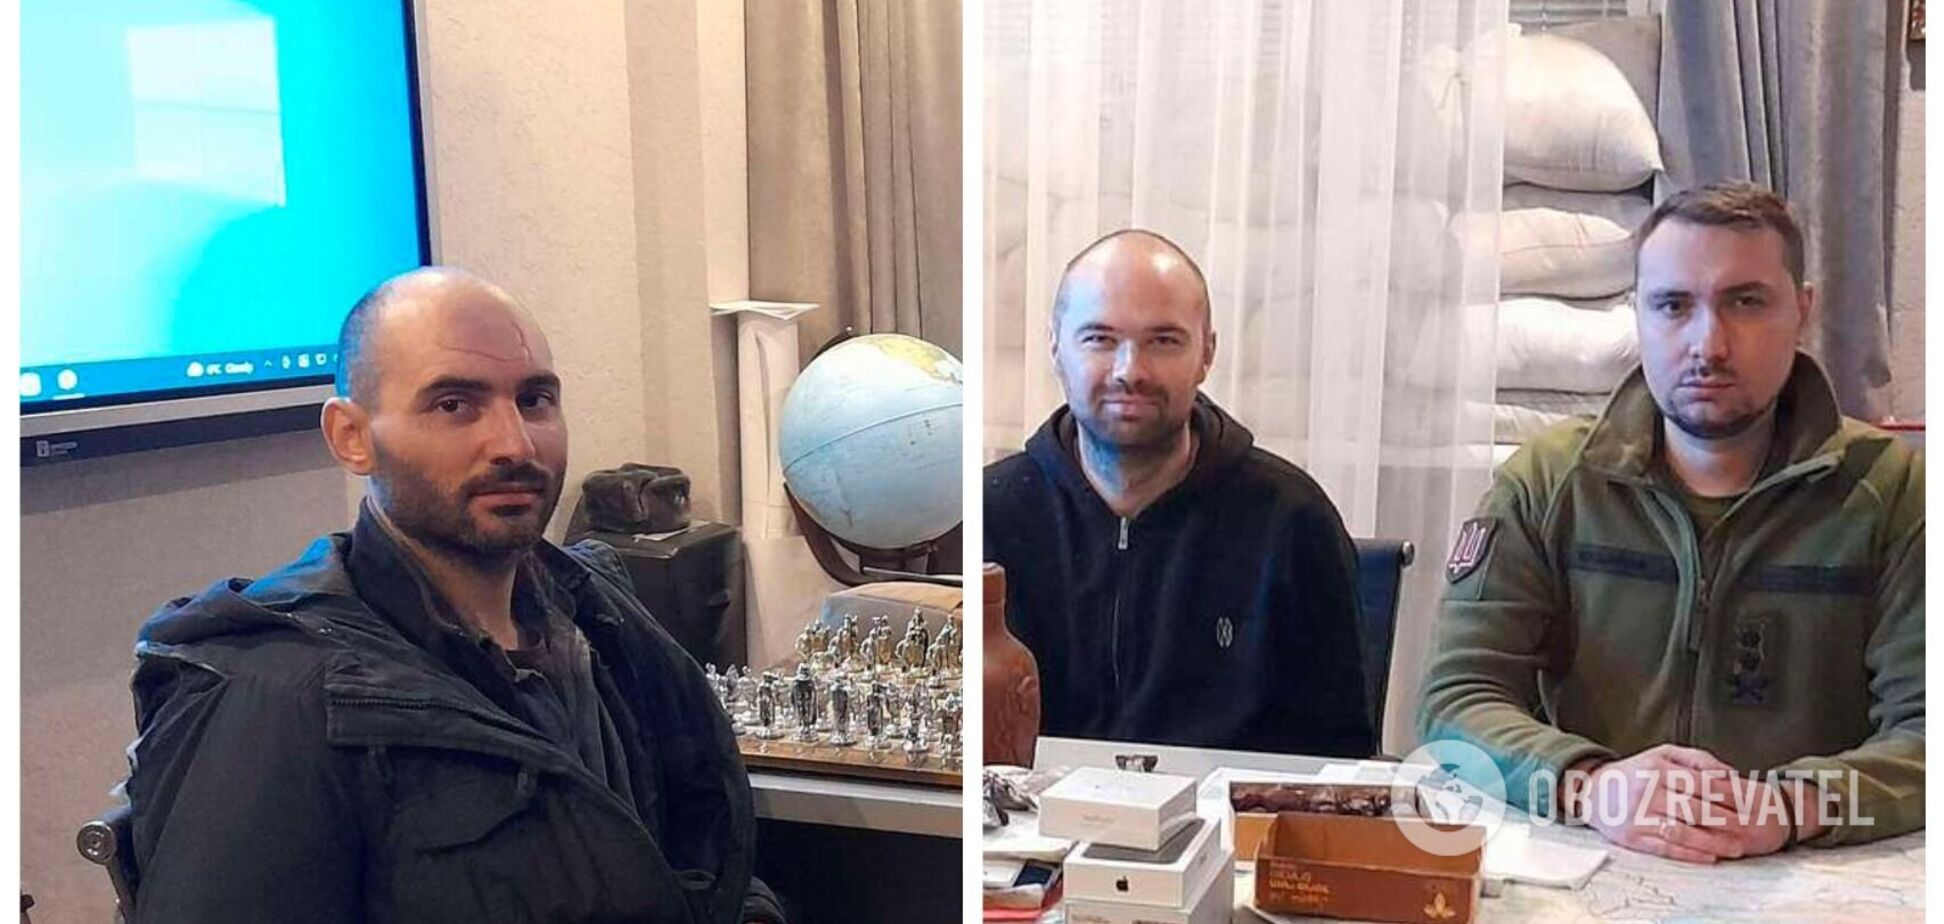 Из плена удалось освободить двух украинских пилотов, над которыми издевались в России: выяснились подробности